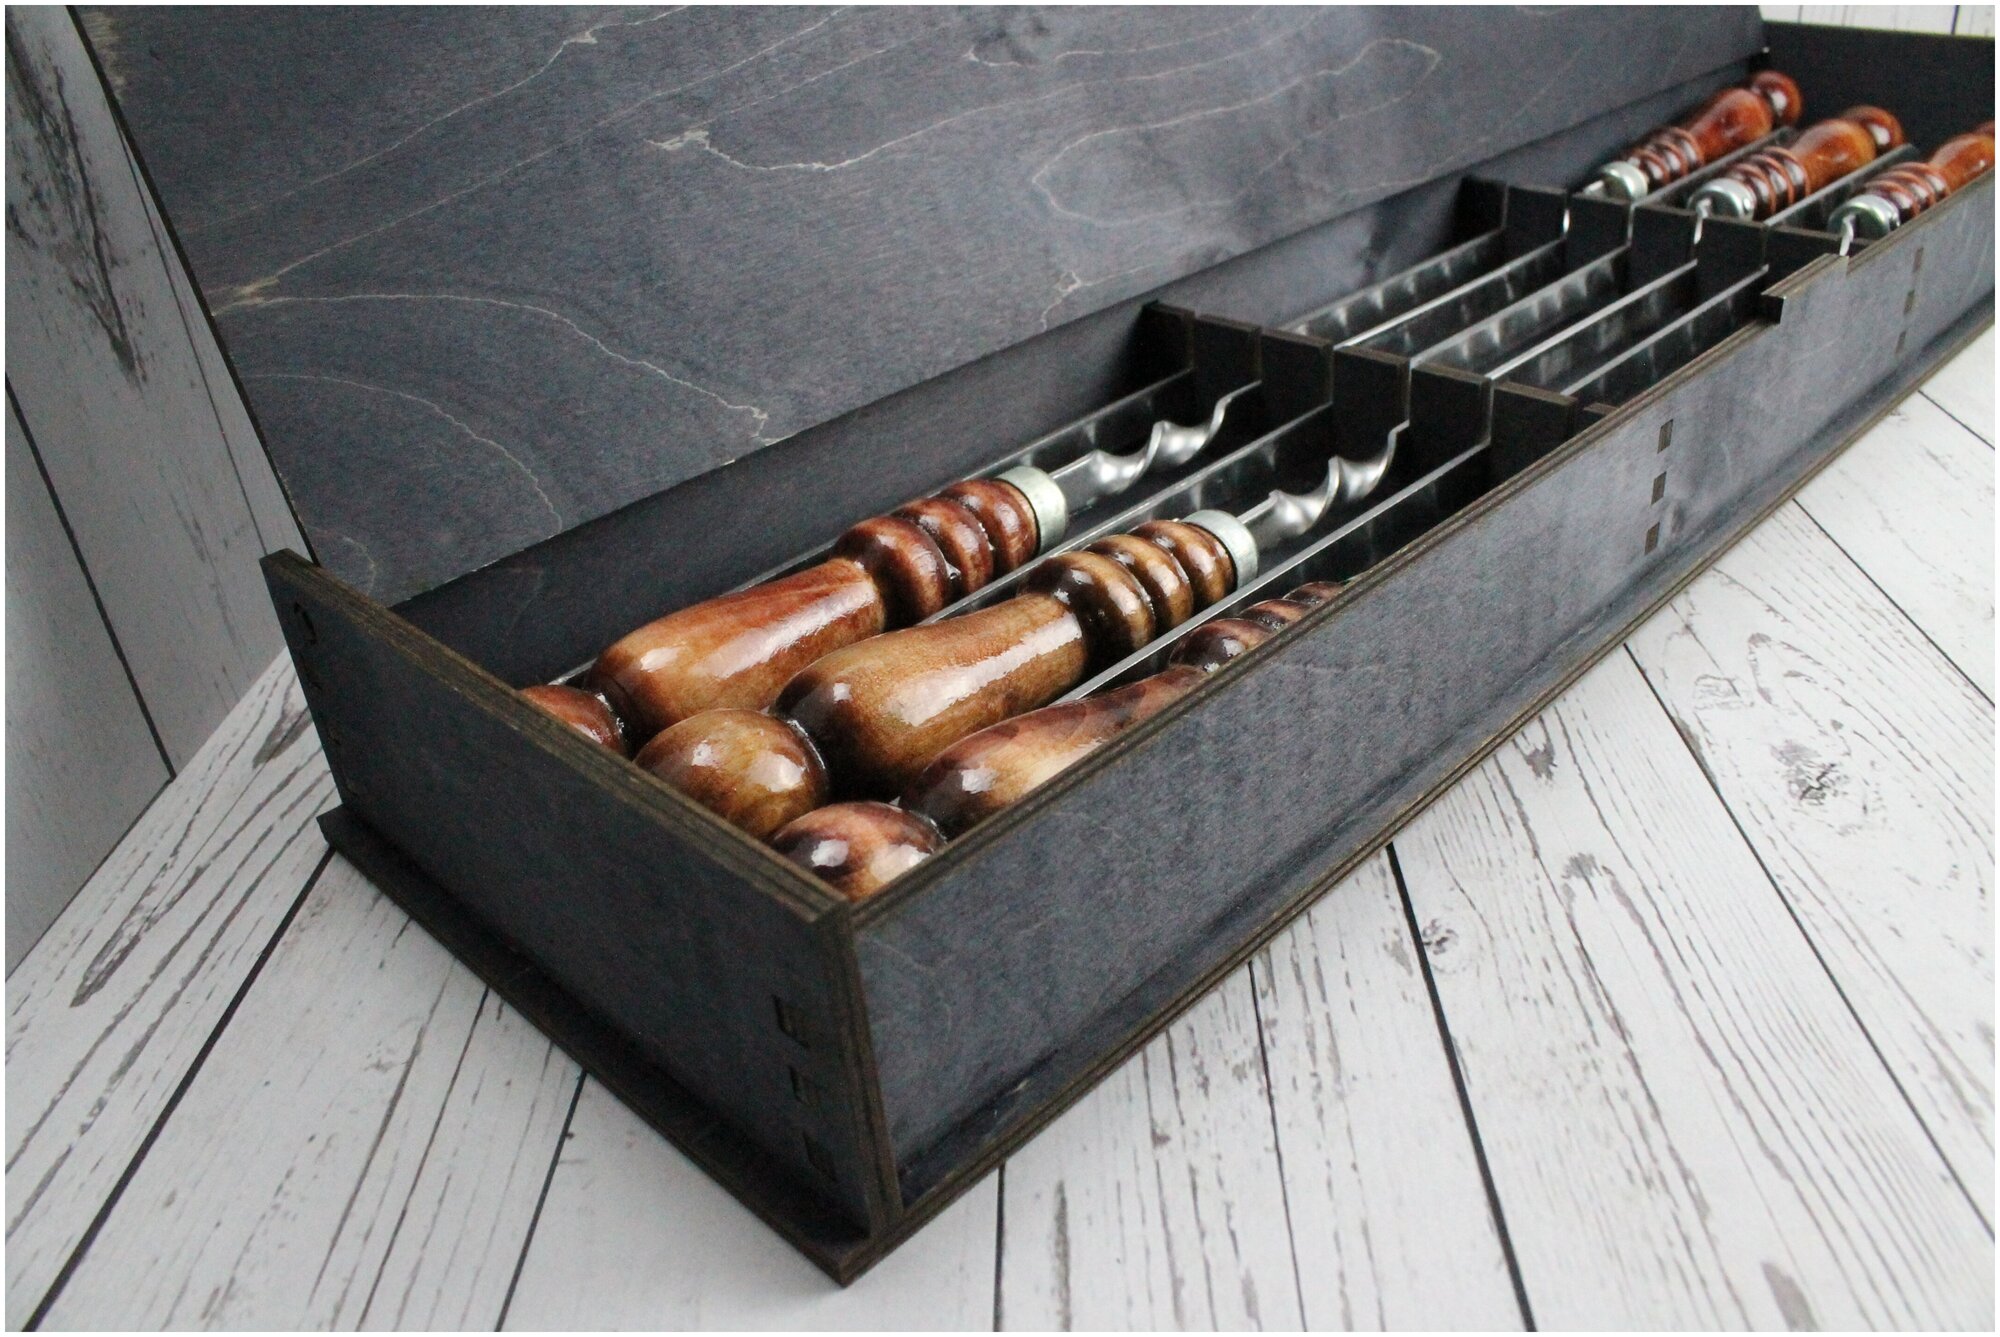 Шампуры с деревянной ручкой 6шт 40см/набор шампуров/набор для пикника,шашлыка,для гриля, для барбекю "Шашлык машлык" - фотография № 9